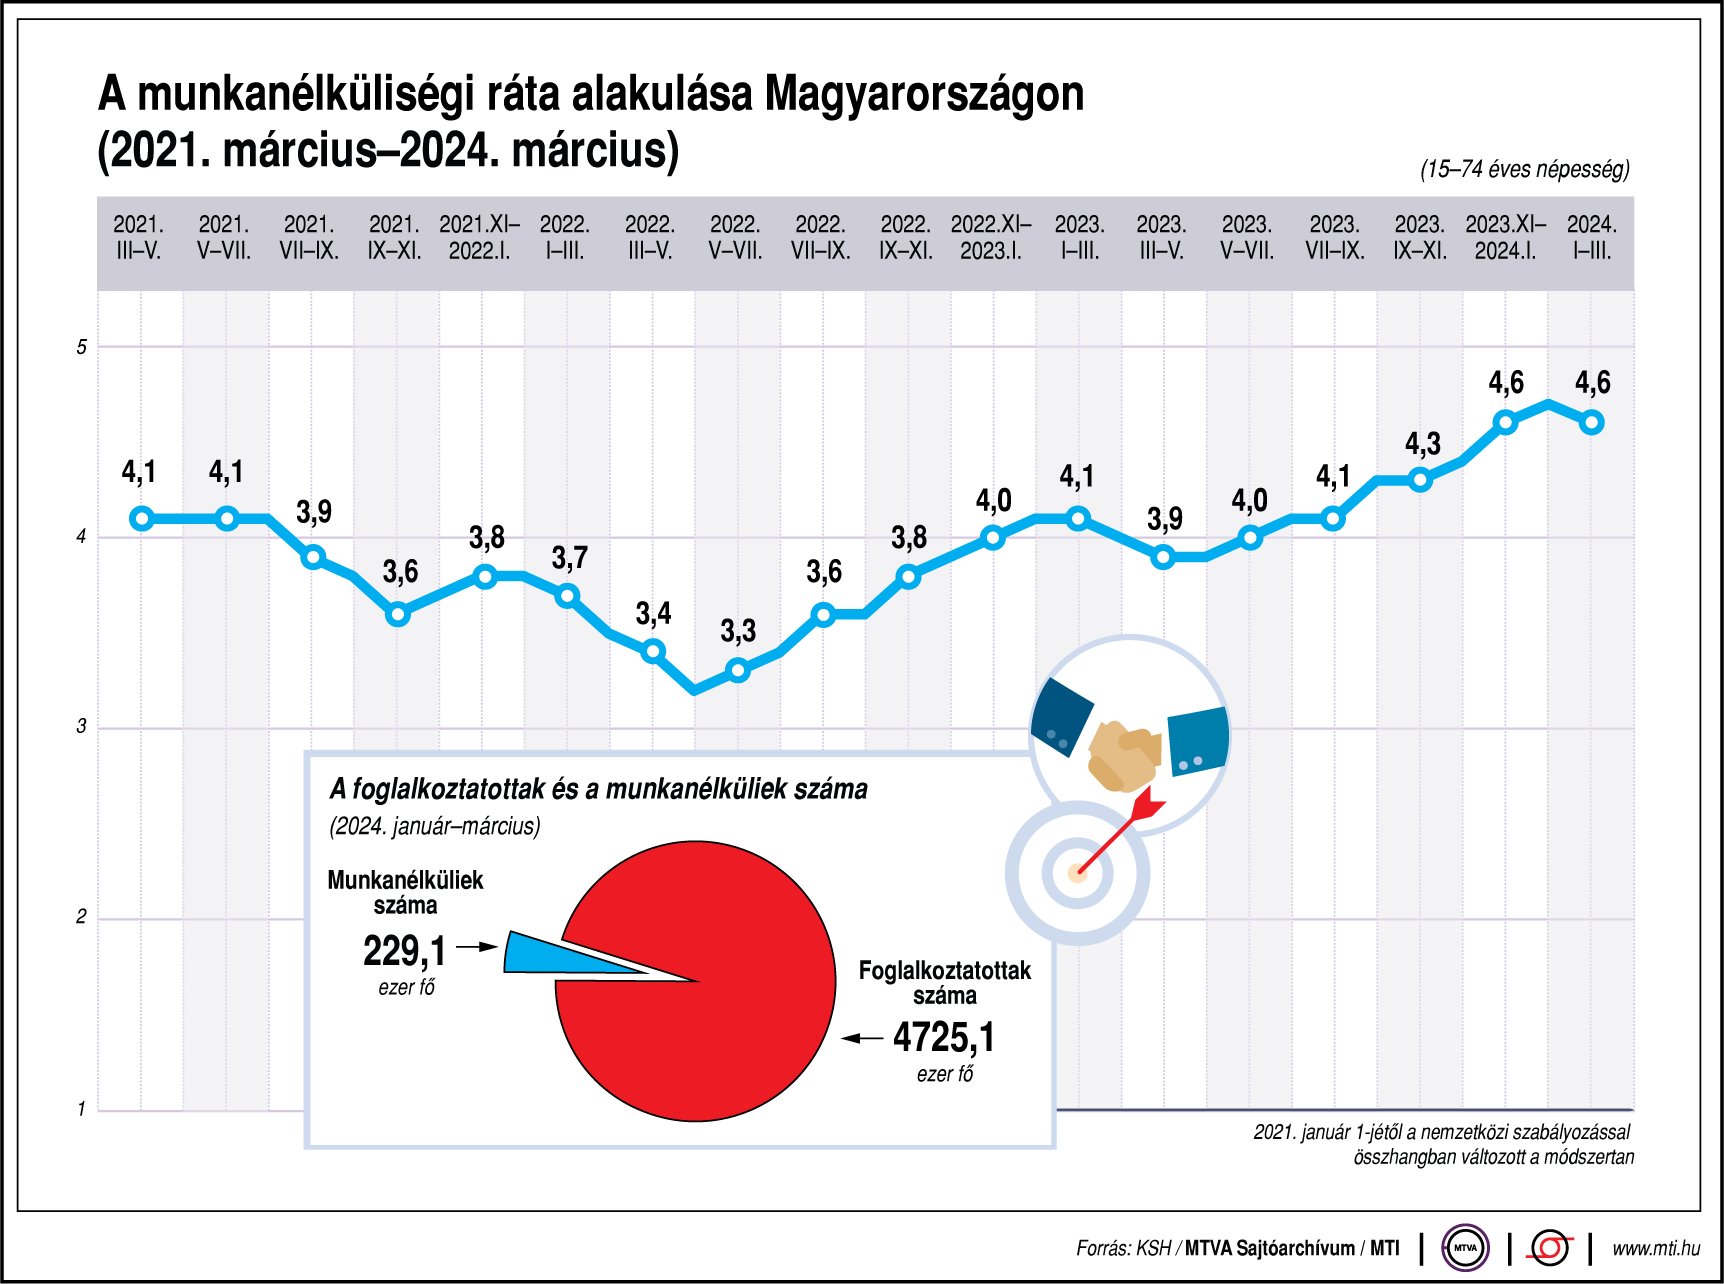 A munkanélküliségi ráta alakulása Magyarországon (2021. március-2024. március)